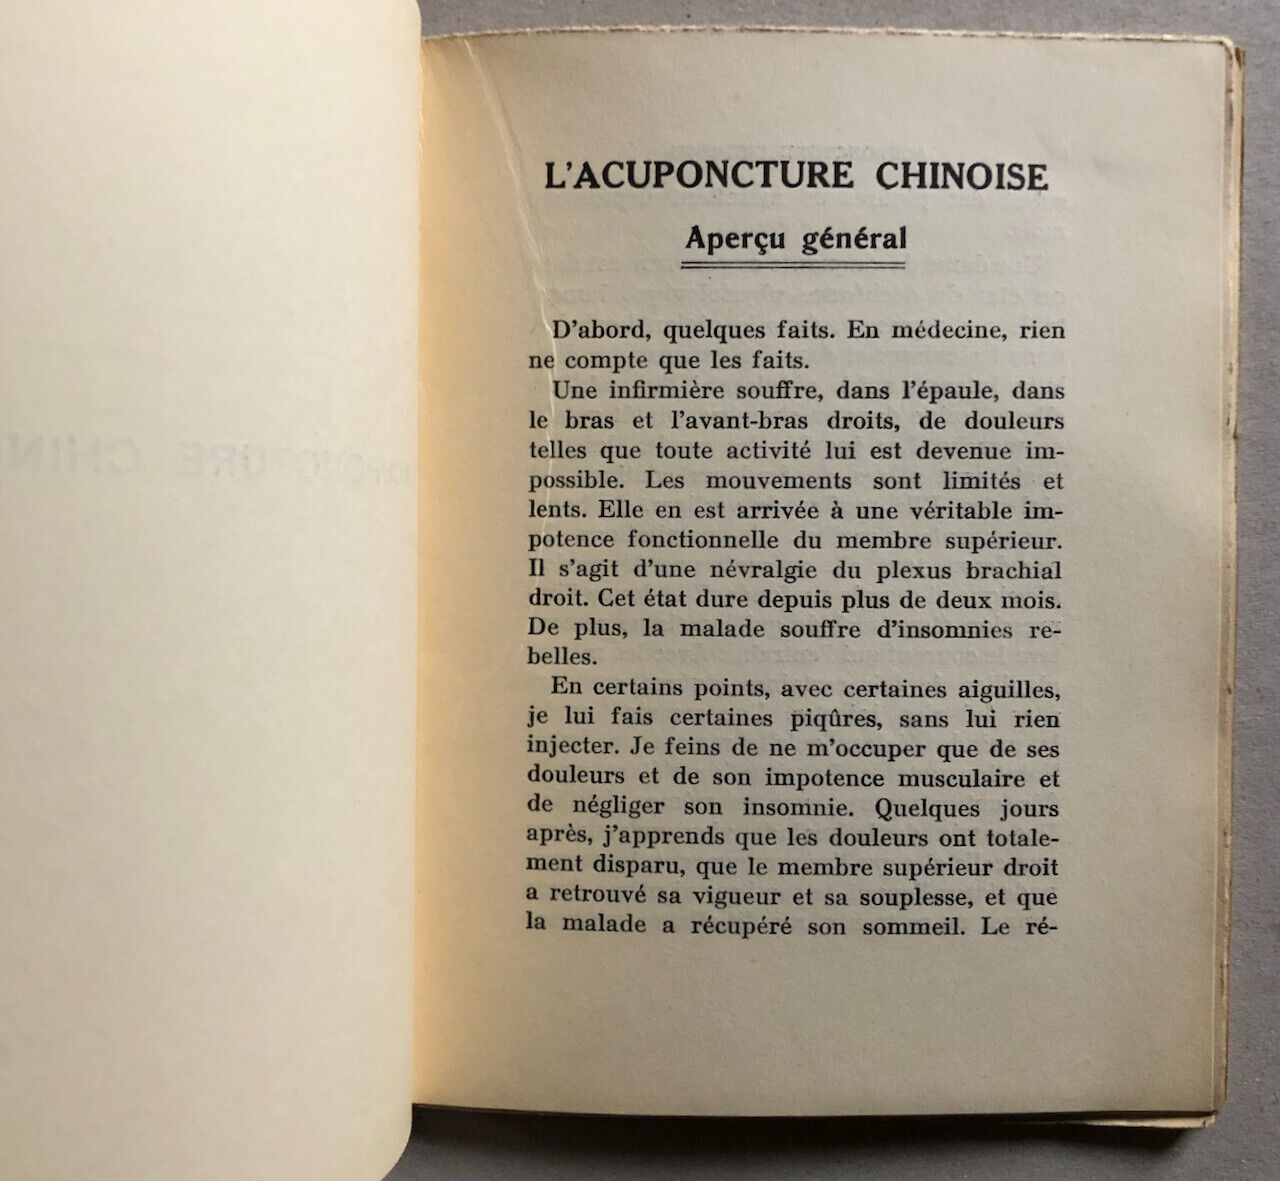 Docteur Bonnet-Lemaire — Acuponcture chinoise — édition originale — Adyar — 1933